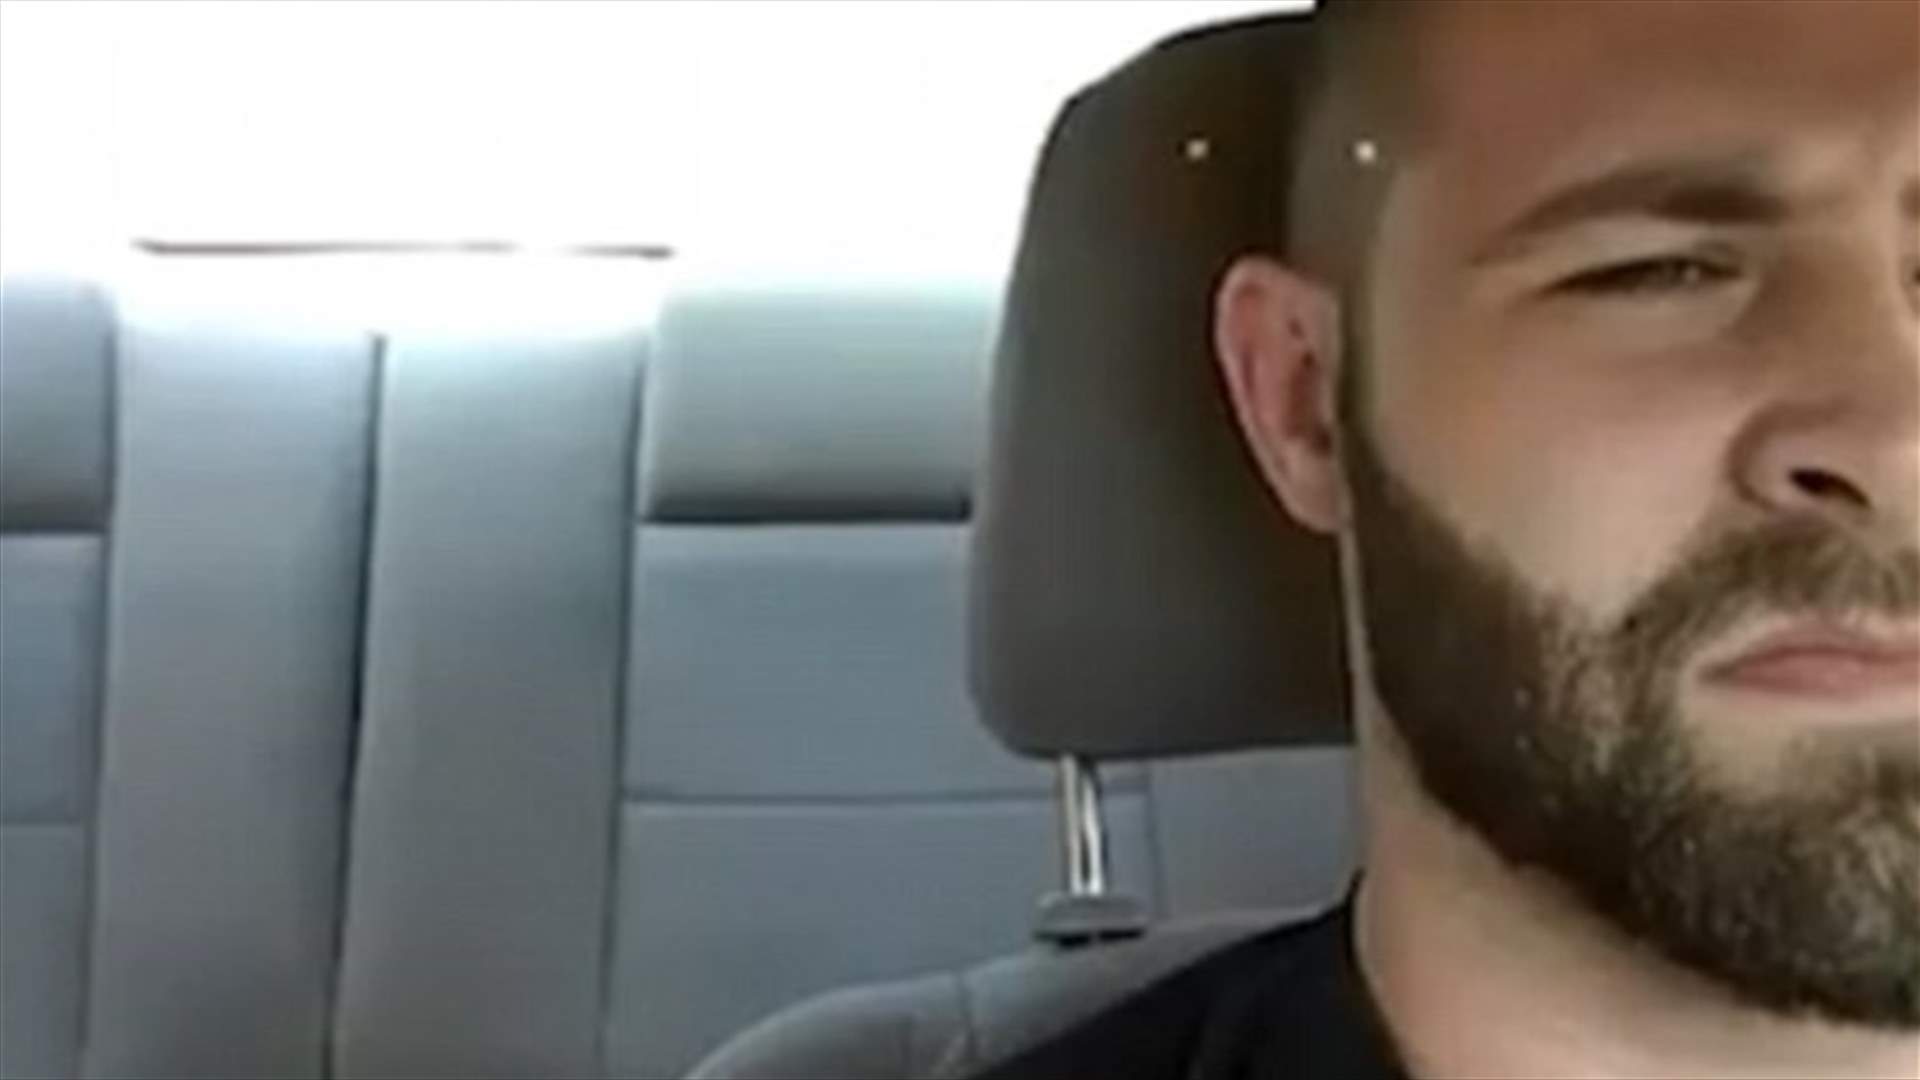 بالفيديو: أغضبه السائق... فأشهر السلاح بوجهه